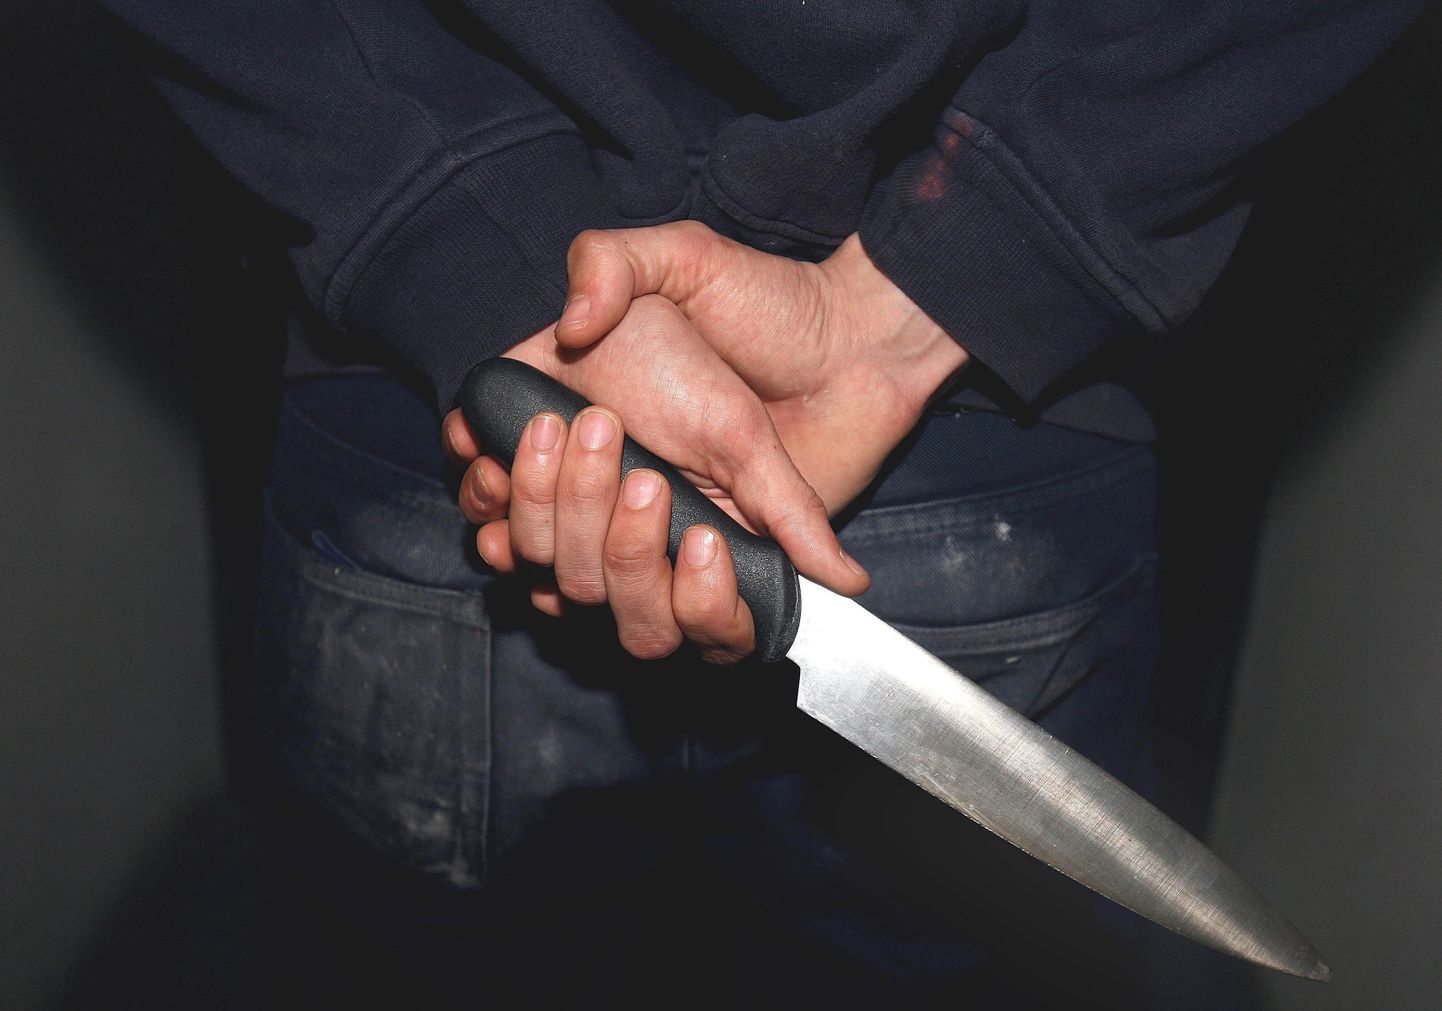 Подозреваемый вернулся на место преступления и напал на полицейских с кухонным ножом. Фото иллюстративное.